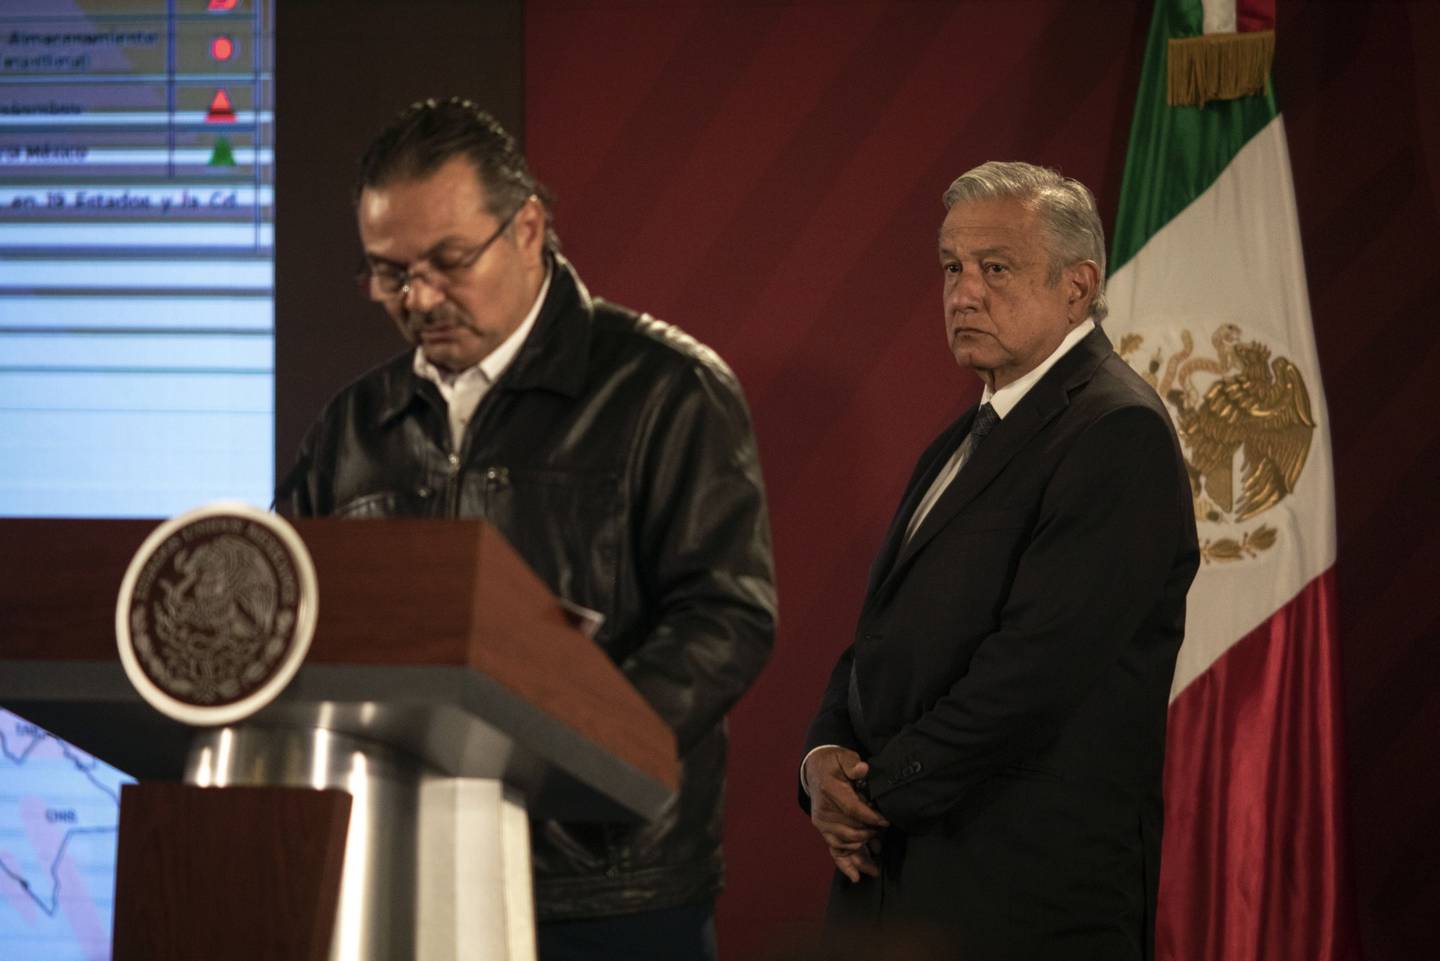 El presidente de México, Andrés Manuel López Obrador, escucha mientras el CEO de Pemex, Octavio Romero Oropeza, habla durante una conferencia de prensa en Palacio Nacional.